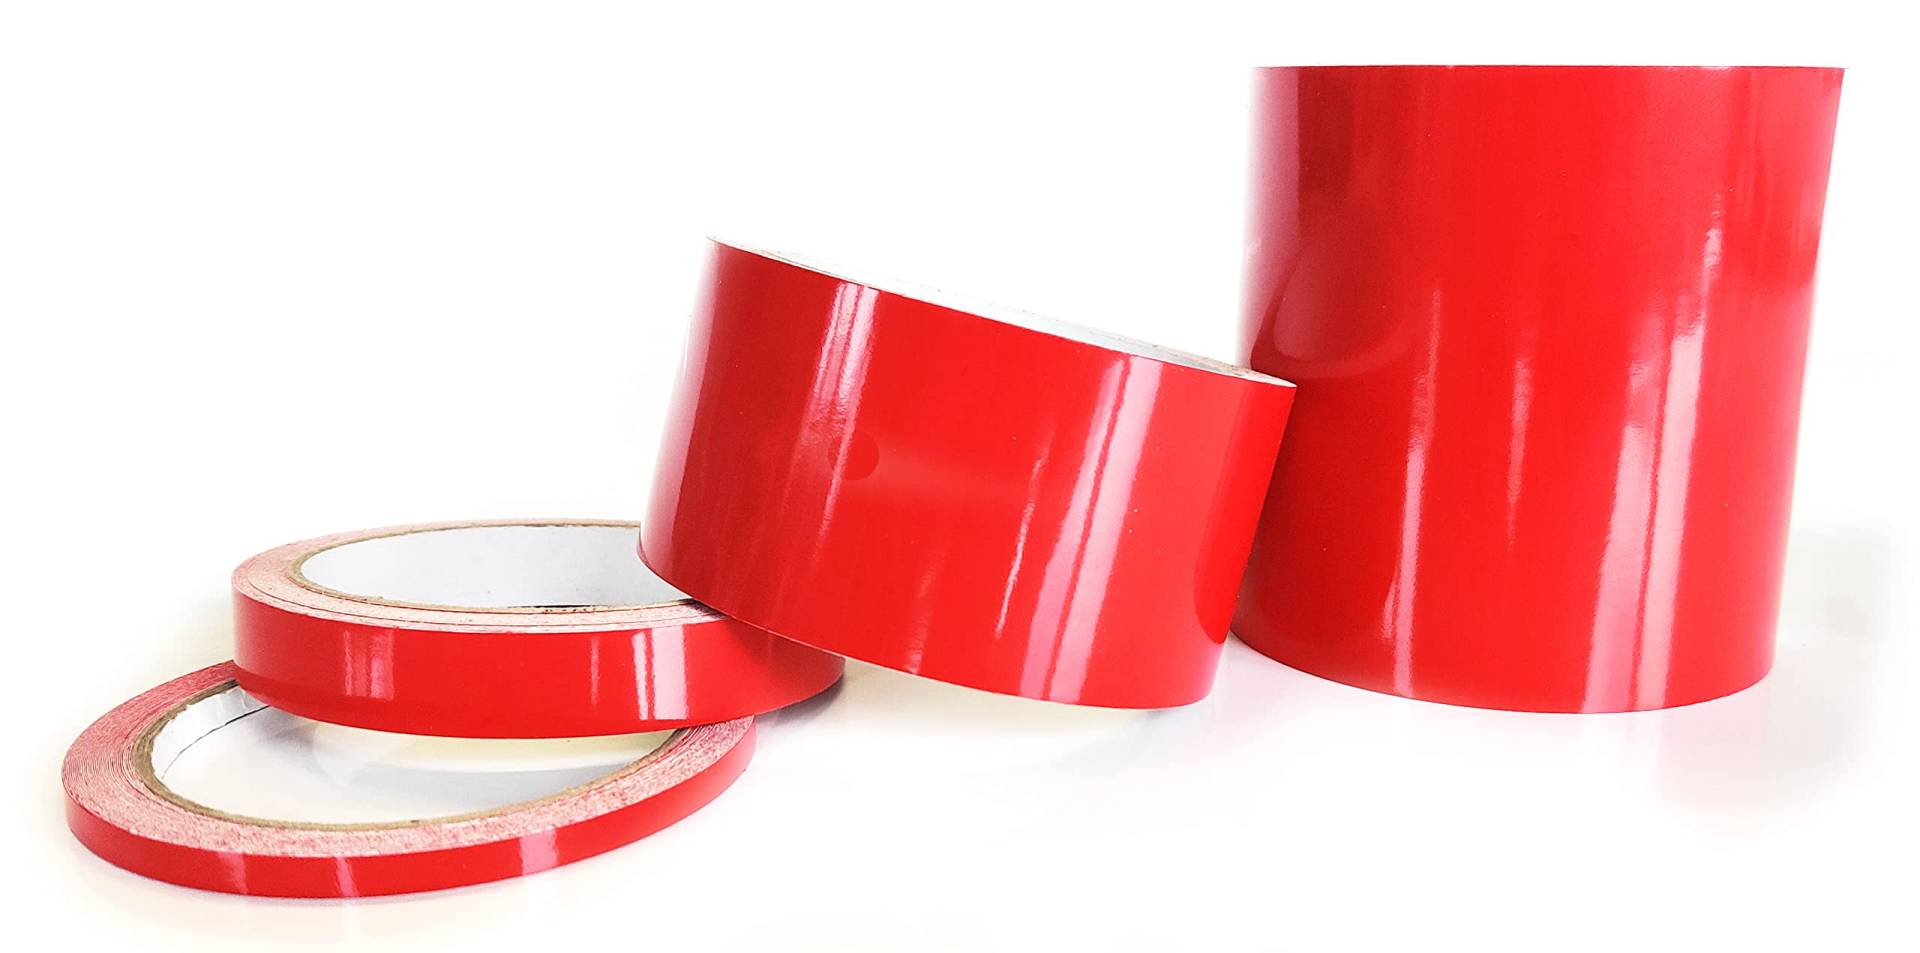 Zierstreifen rot Karmin Glanz in 10 m Länge Aufkleber Folie für Auto Boot Jetski Modellbau Klebeband Dekorstreifen - Karminrot (15 mm) von Decus Shop